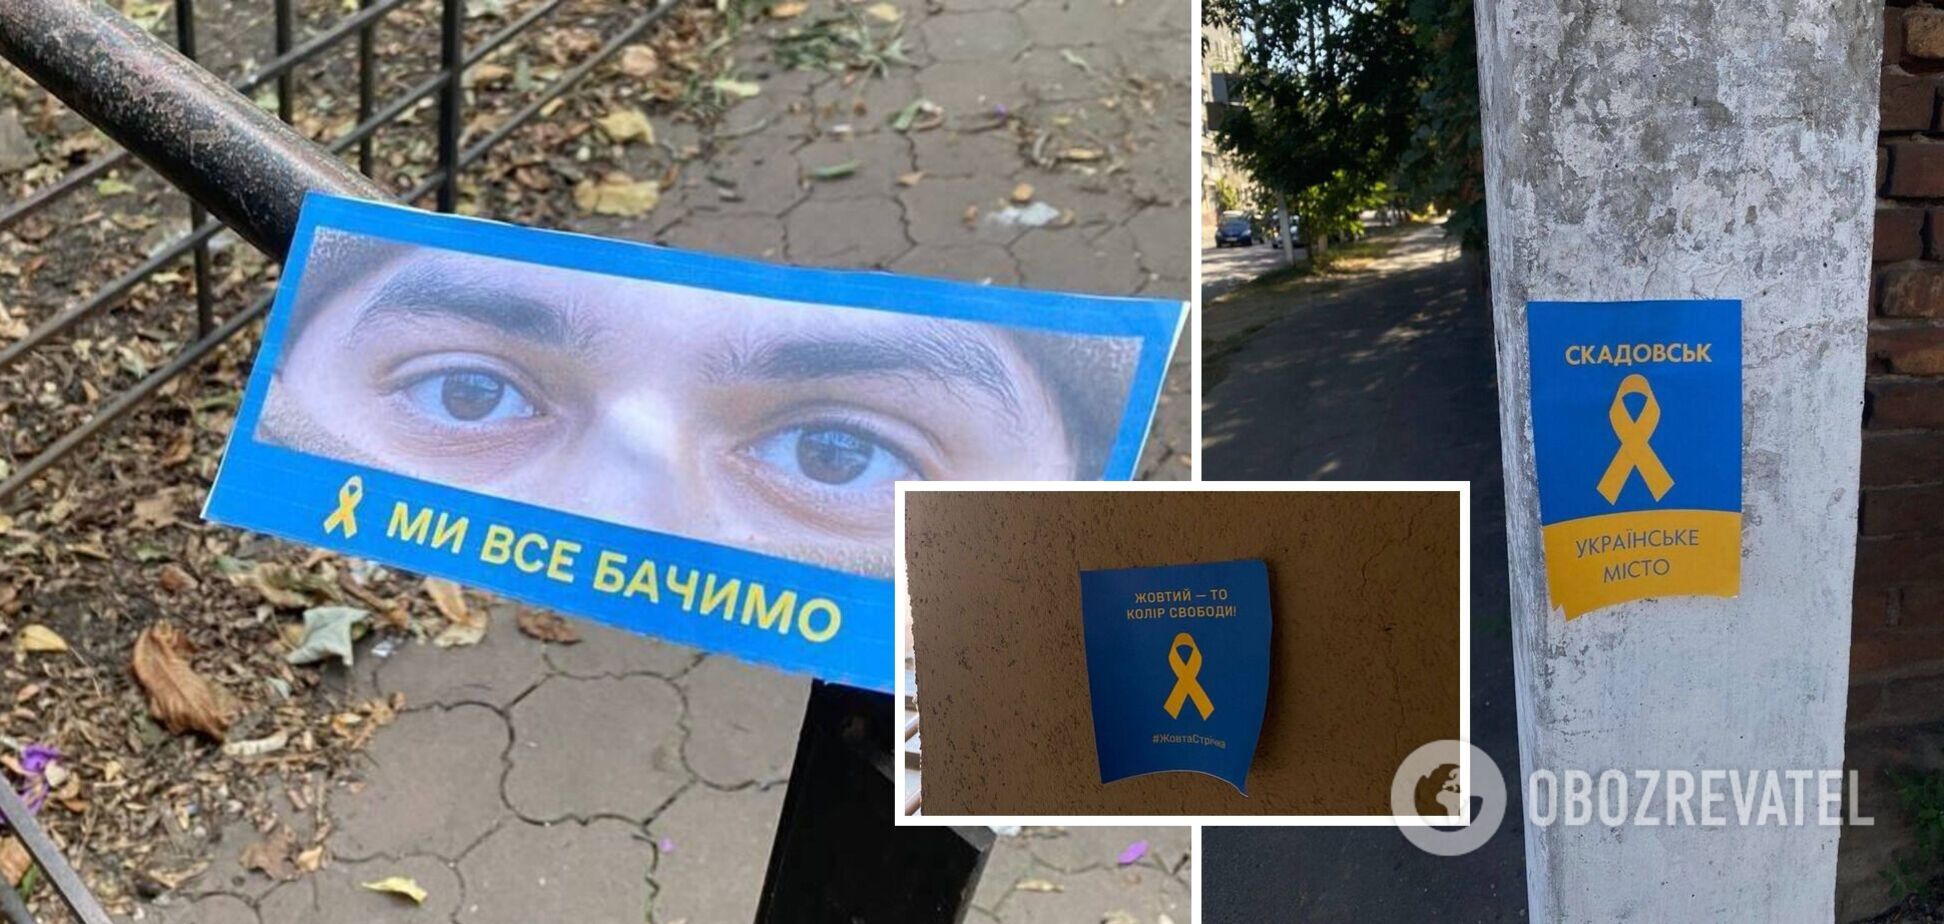 Геническ, Скадовск и Новая Каховка сопротивляются: активисты напомнили оккупантам, что Херсонщина – это Украина. Фото